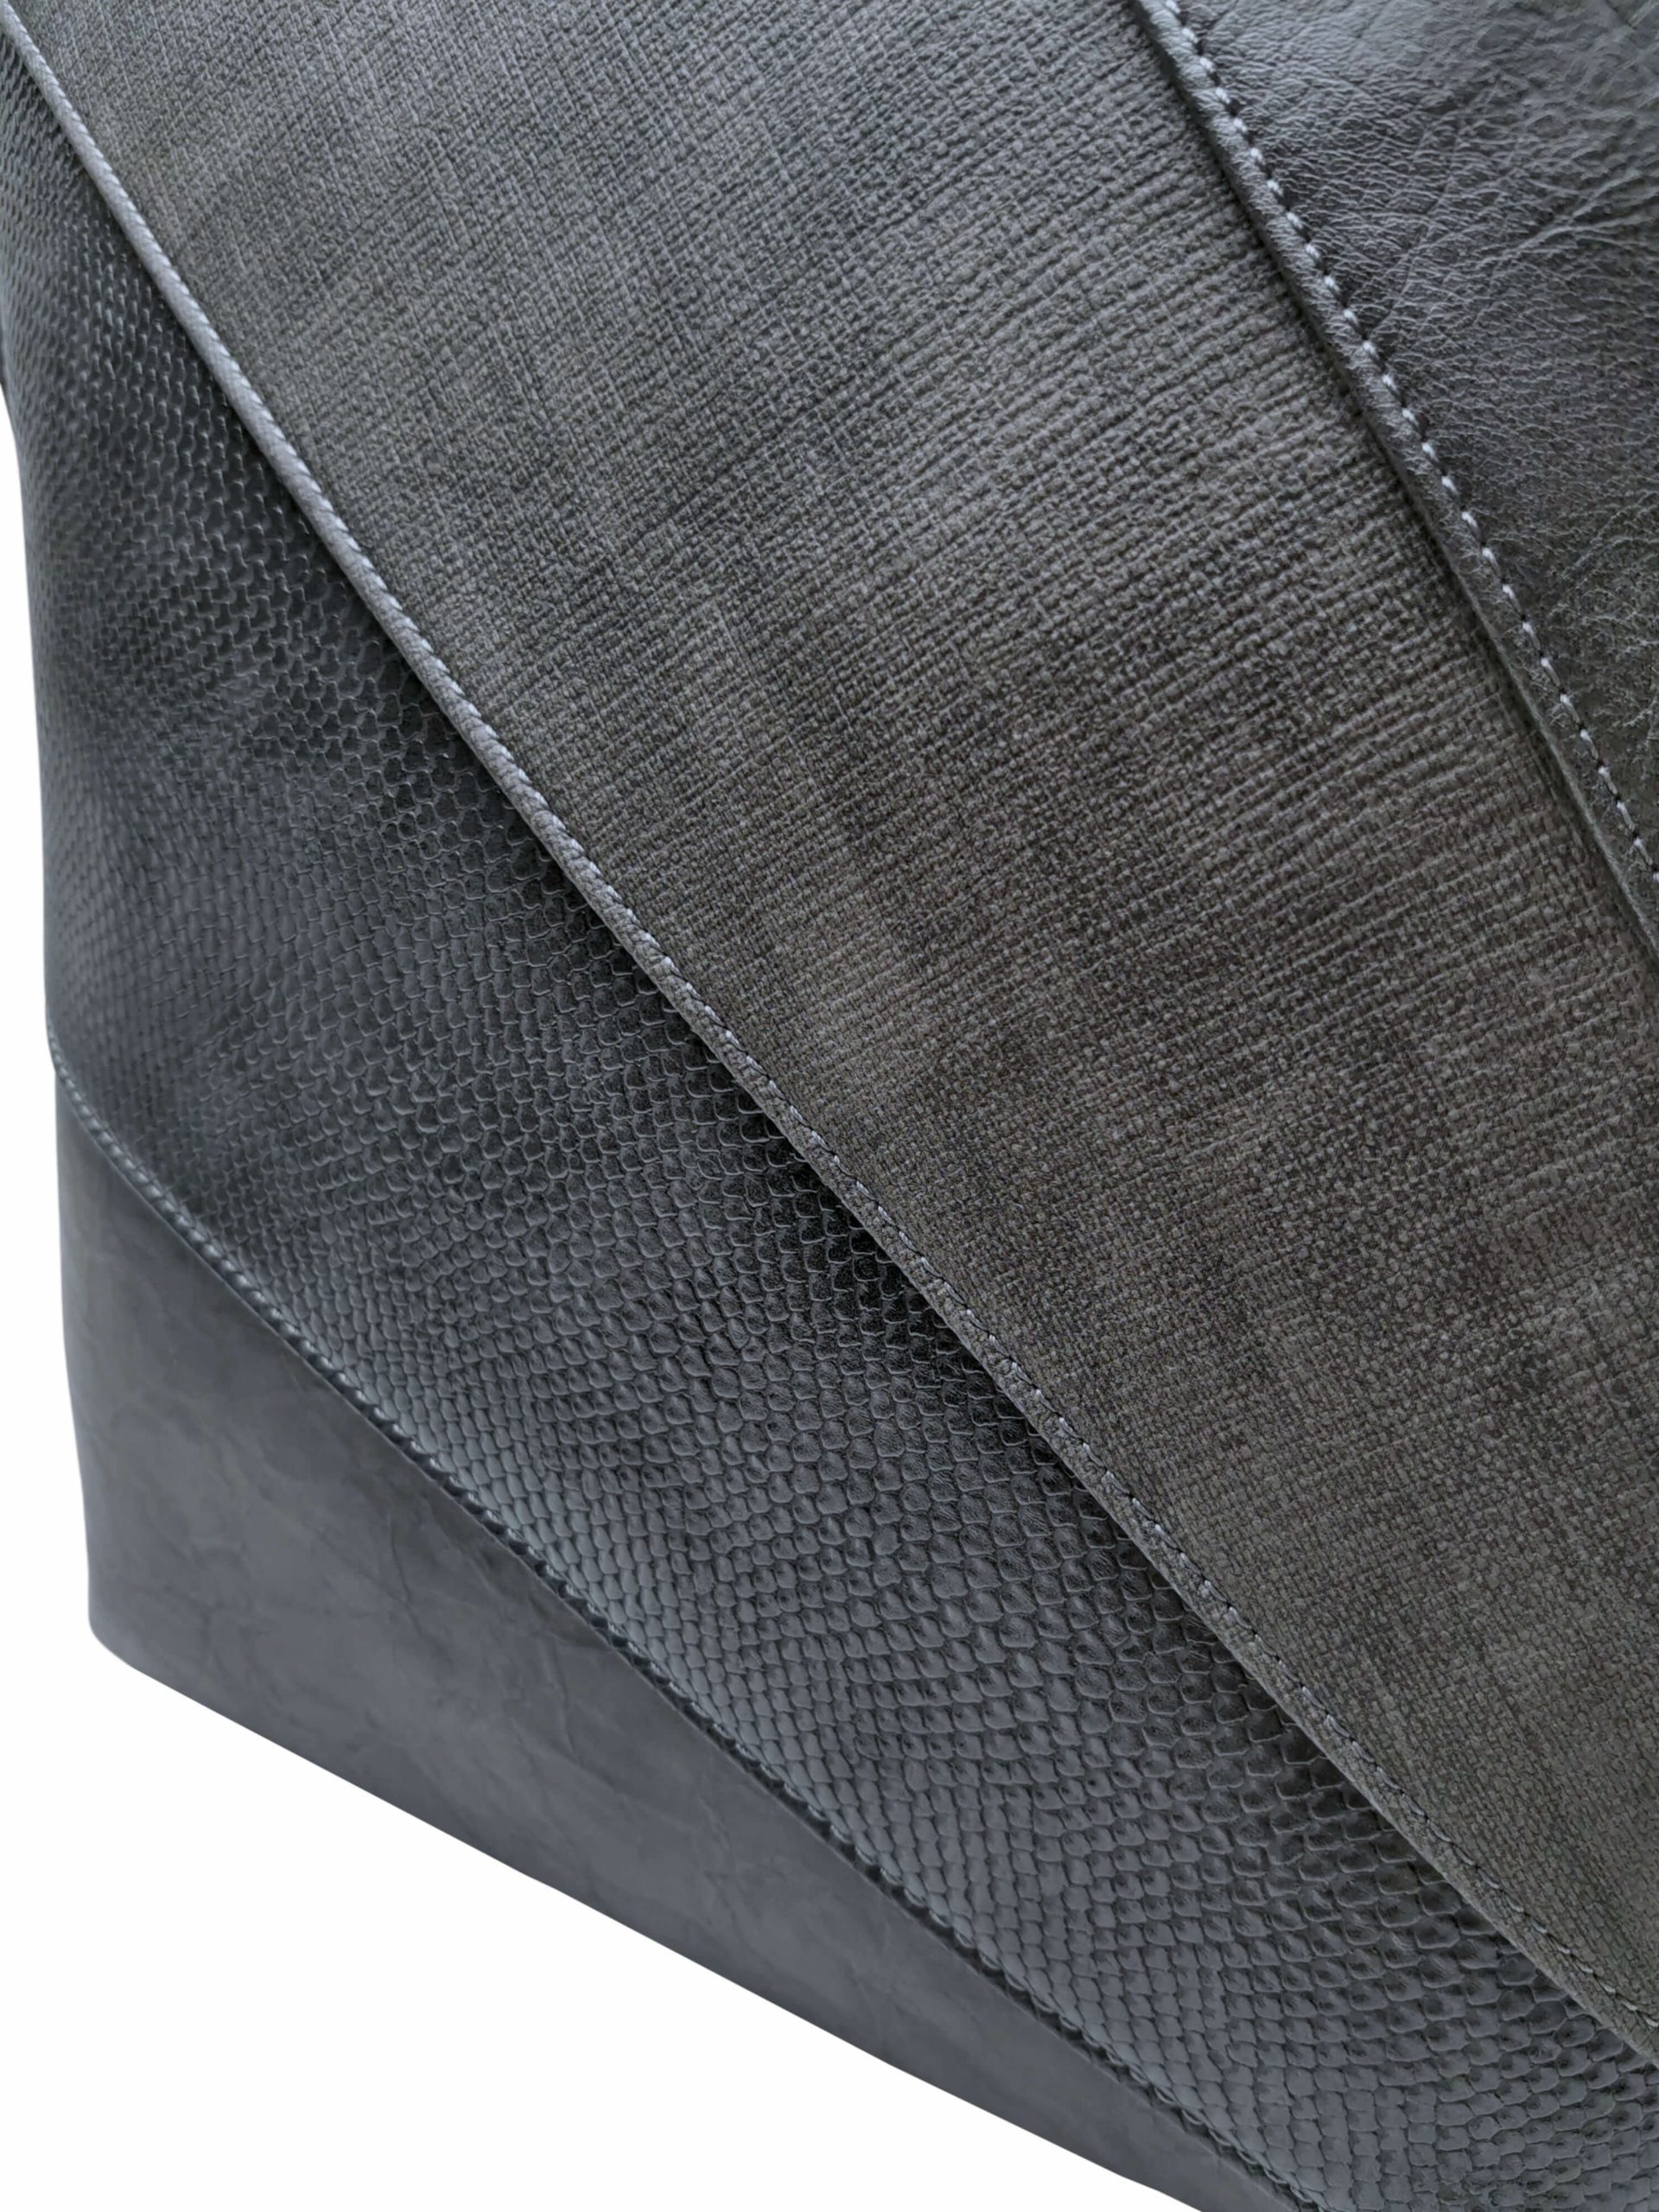 Moderní crossbody kabelka s variací šikmých vzorů, Tapple, H17223, tmavě šedá, detail crossbody kabelky